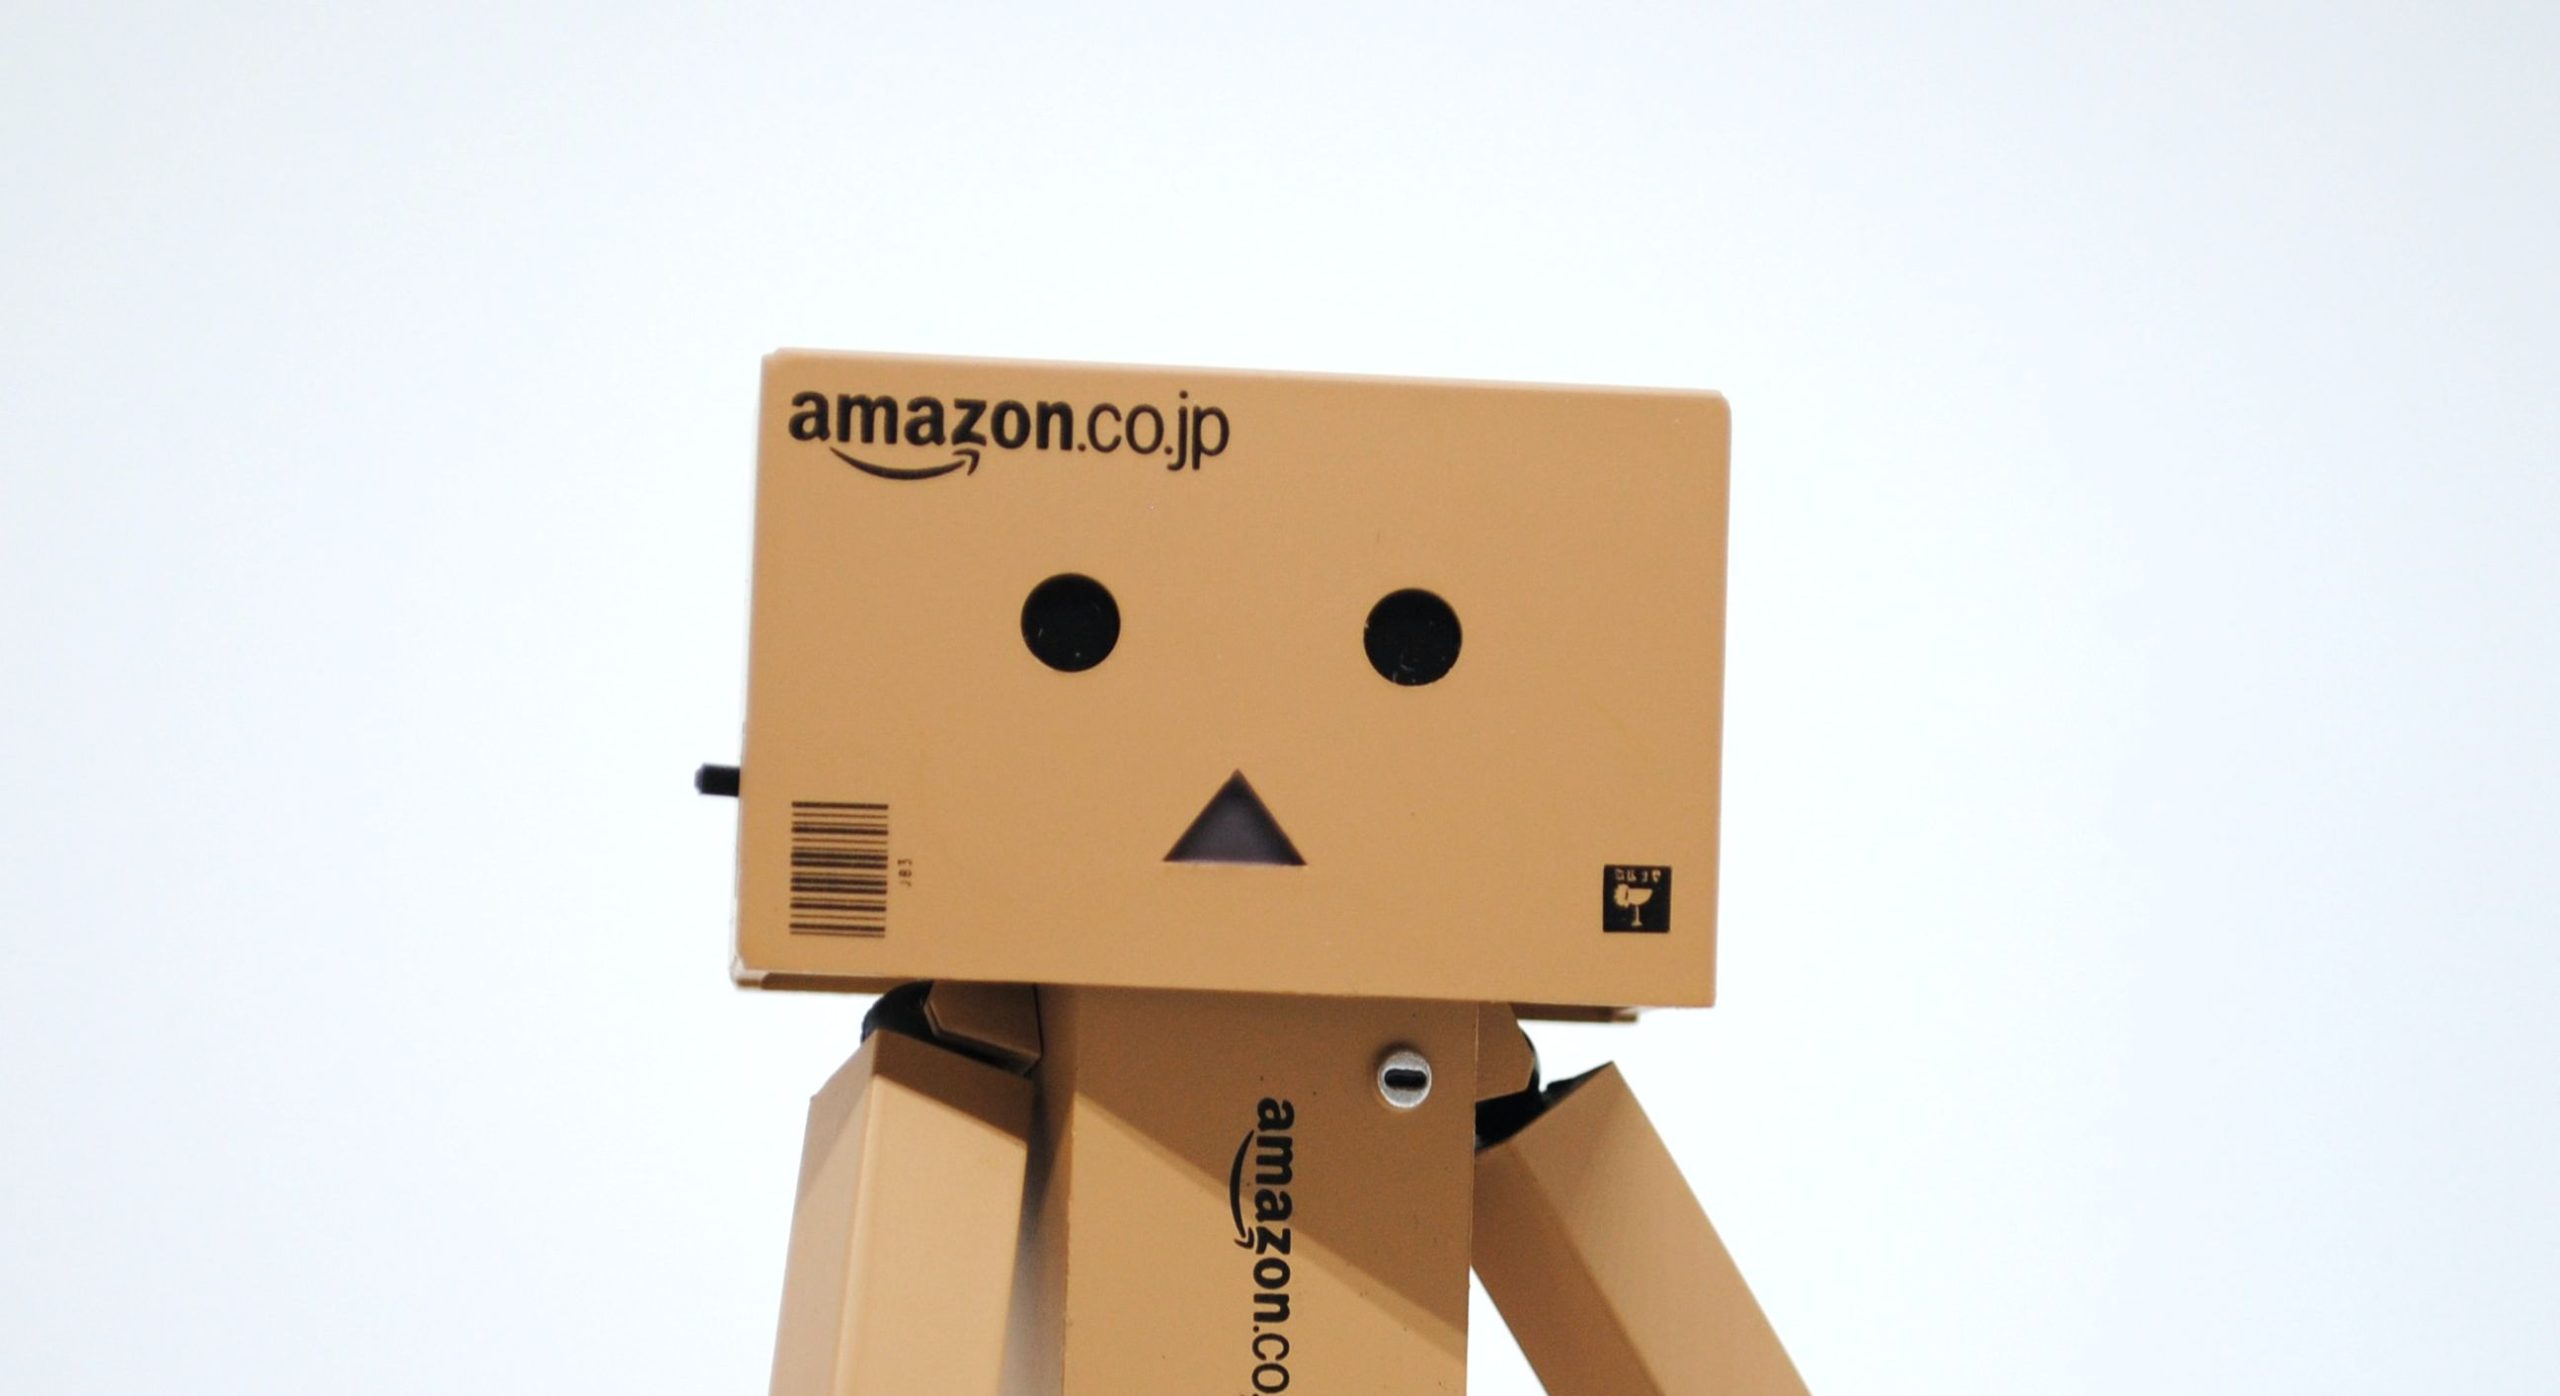 Amazon verloor een pakket van $1.4 miljard